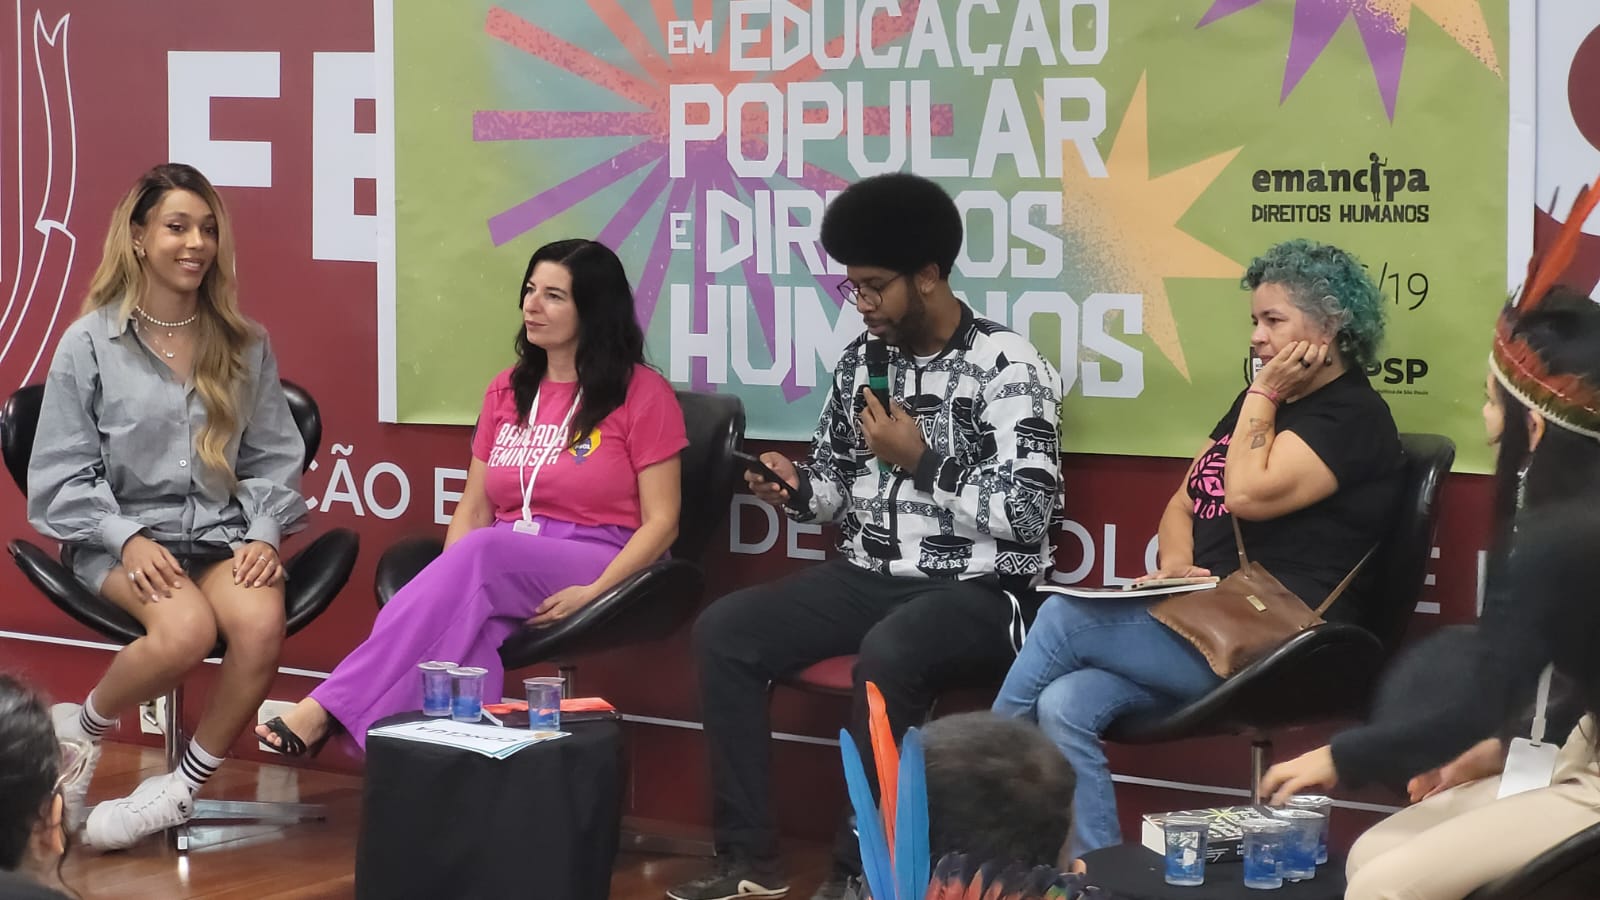 Seminário Internacional em Educação Popular e Direitos Humanos reúne ativistas em São Paulo